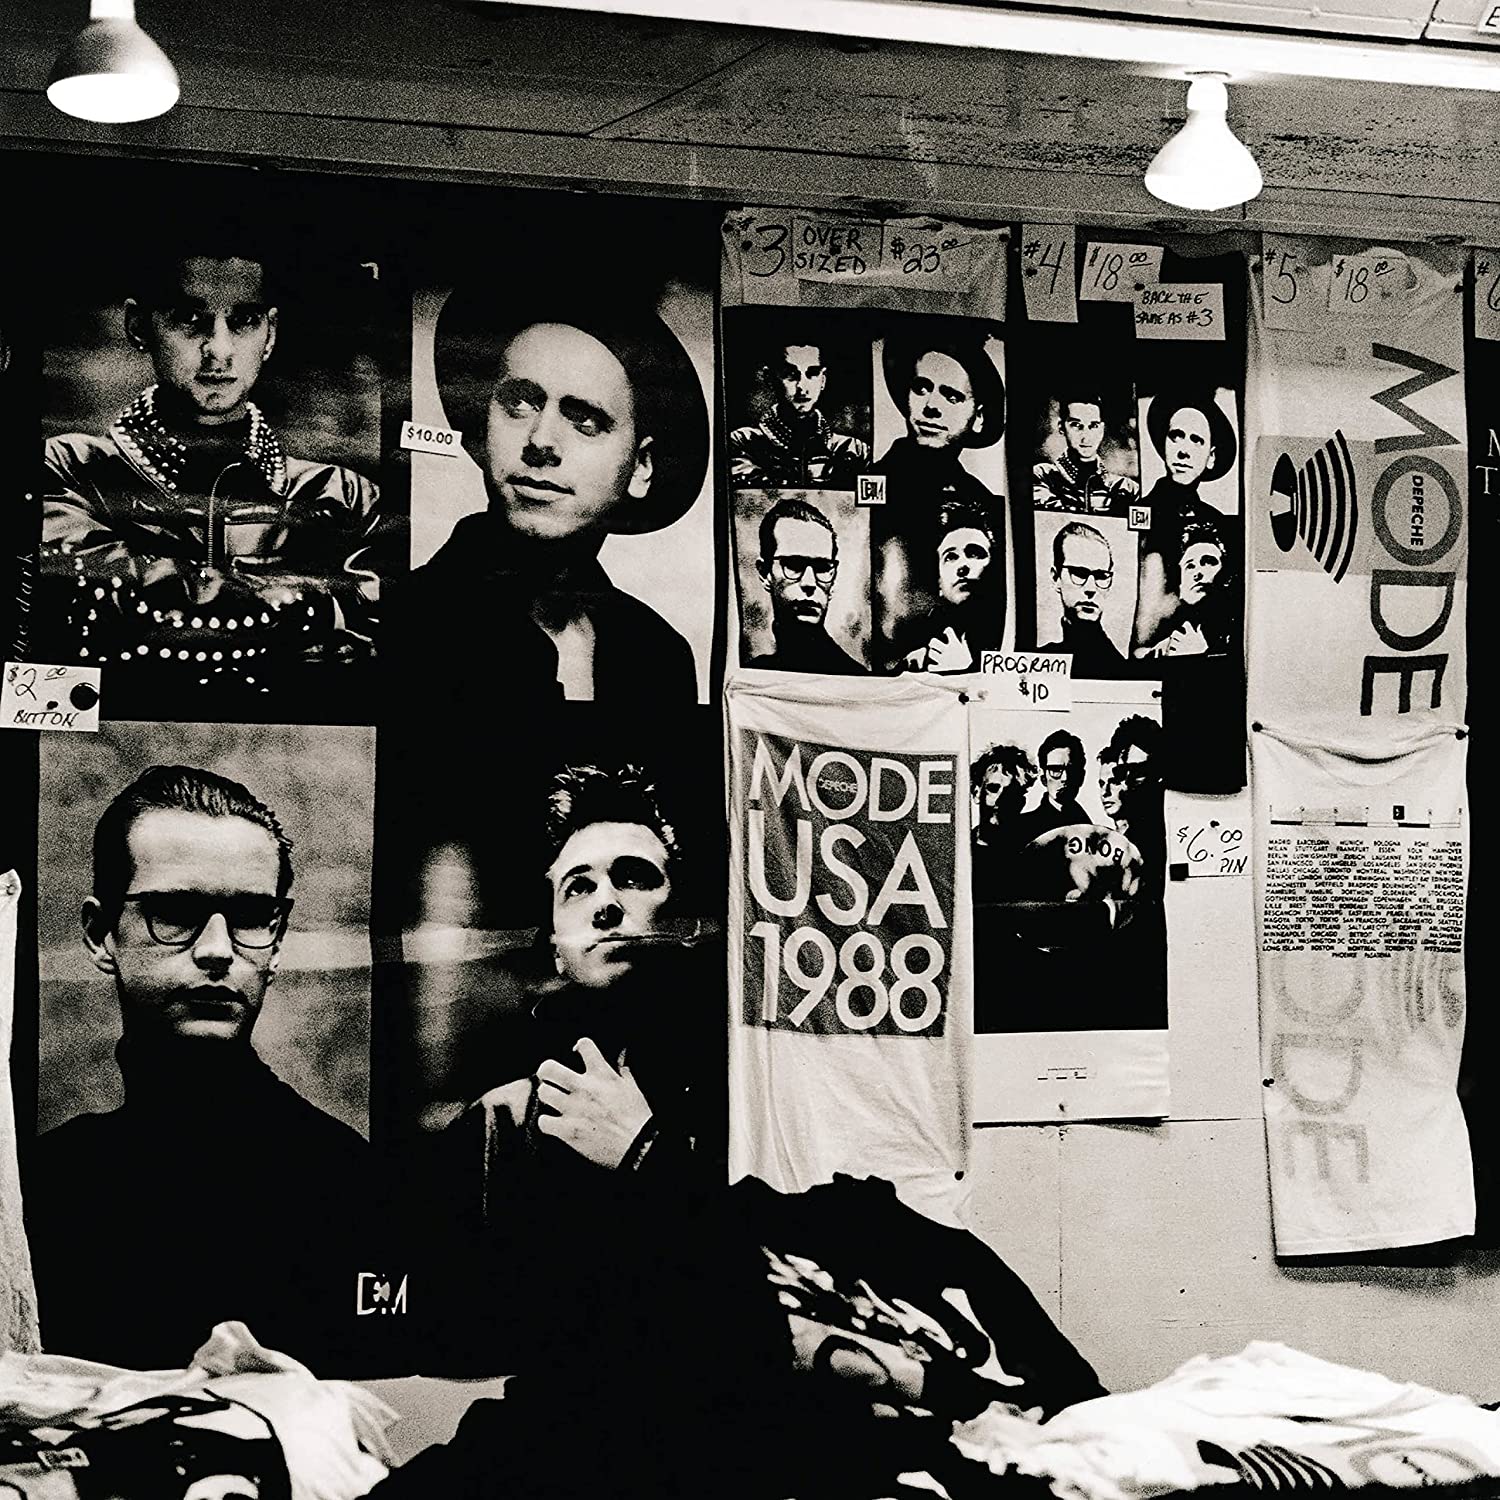 Depeche Mode -101